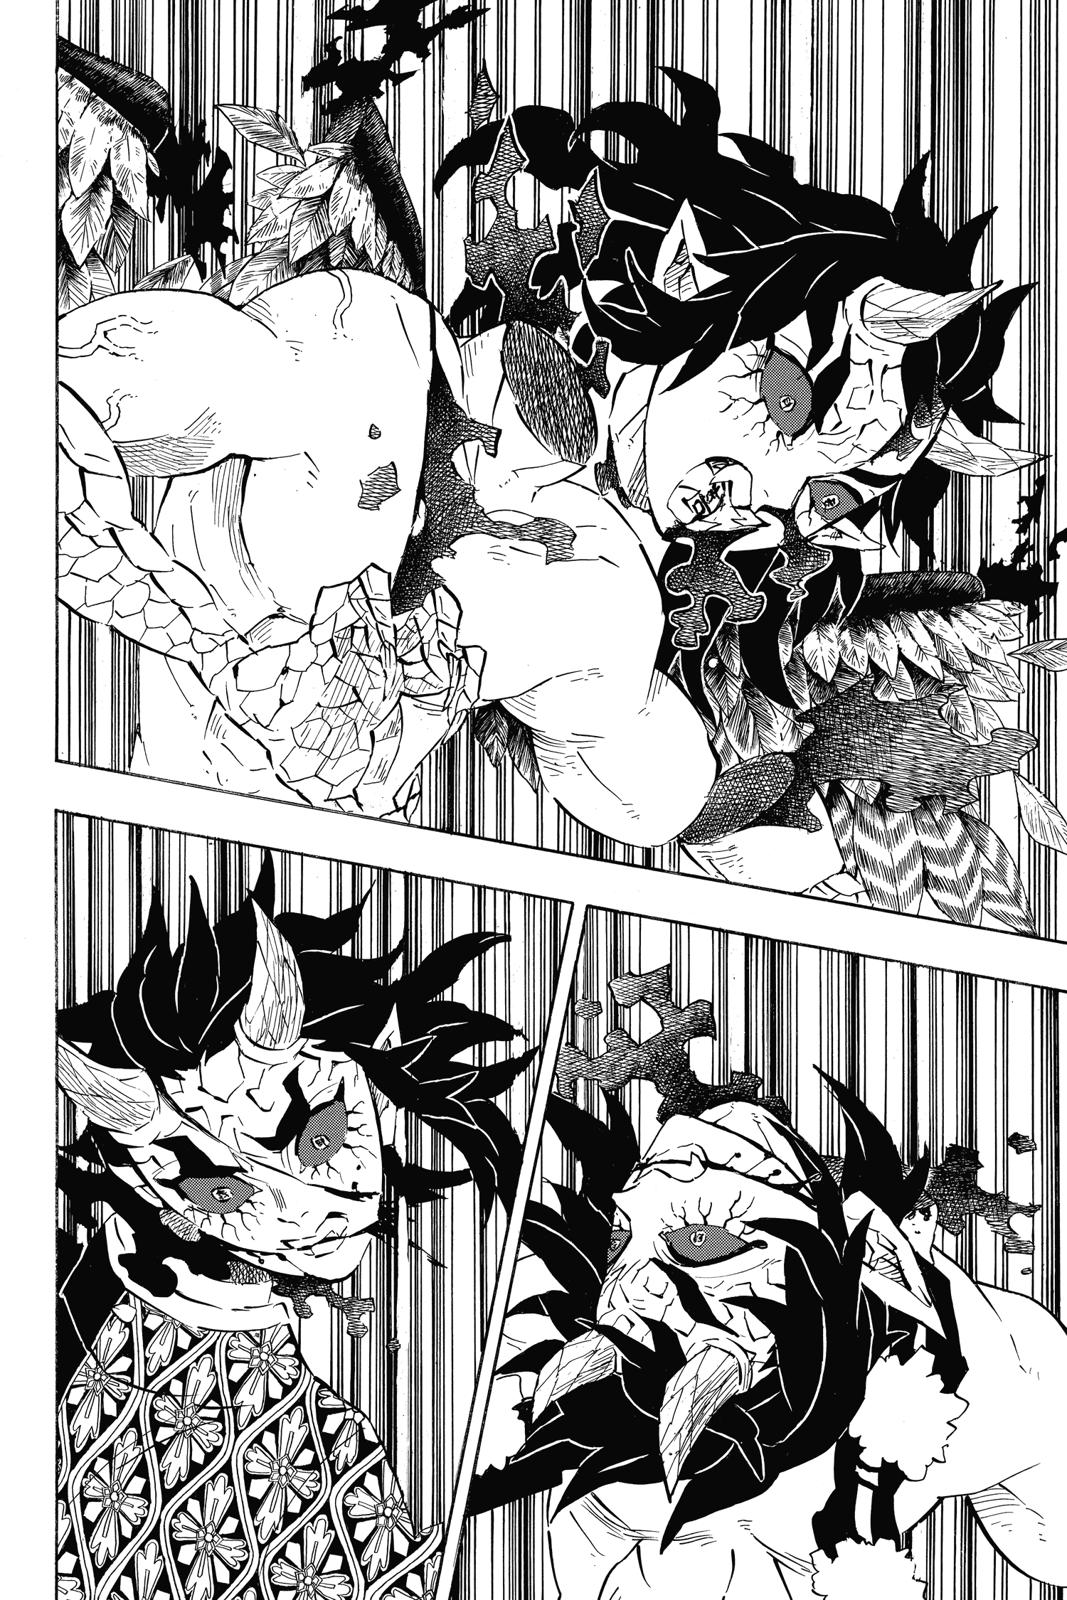 Demon Slayer Manga Manga Chapter - 113 - image 9